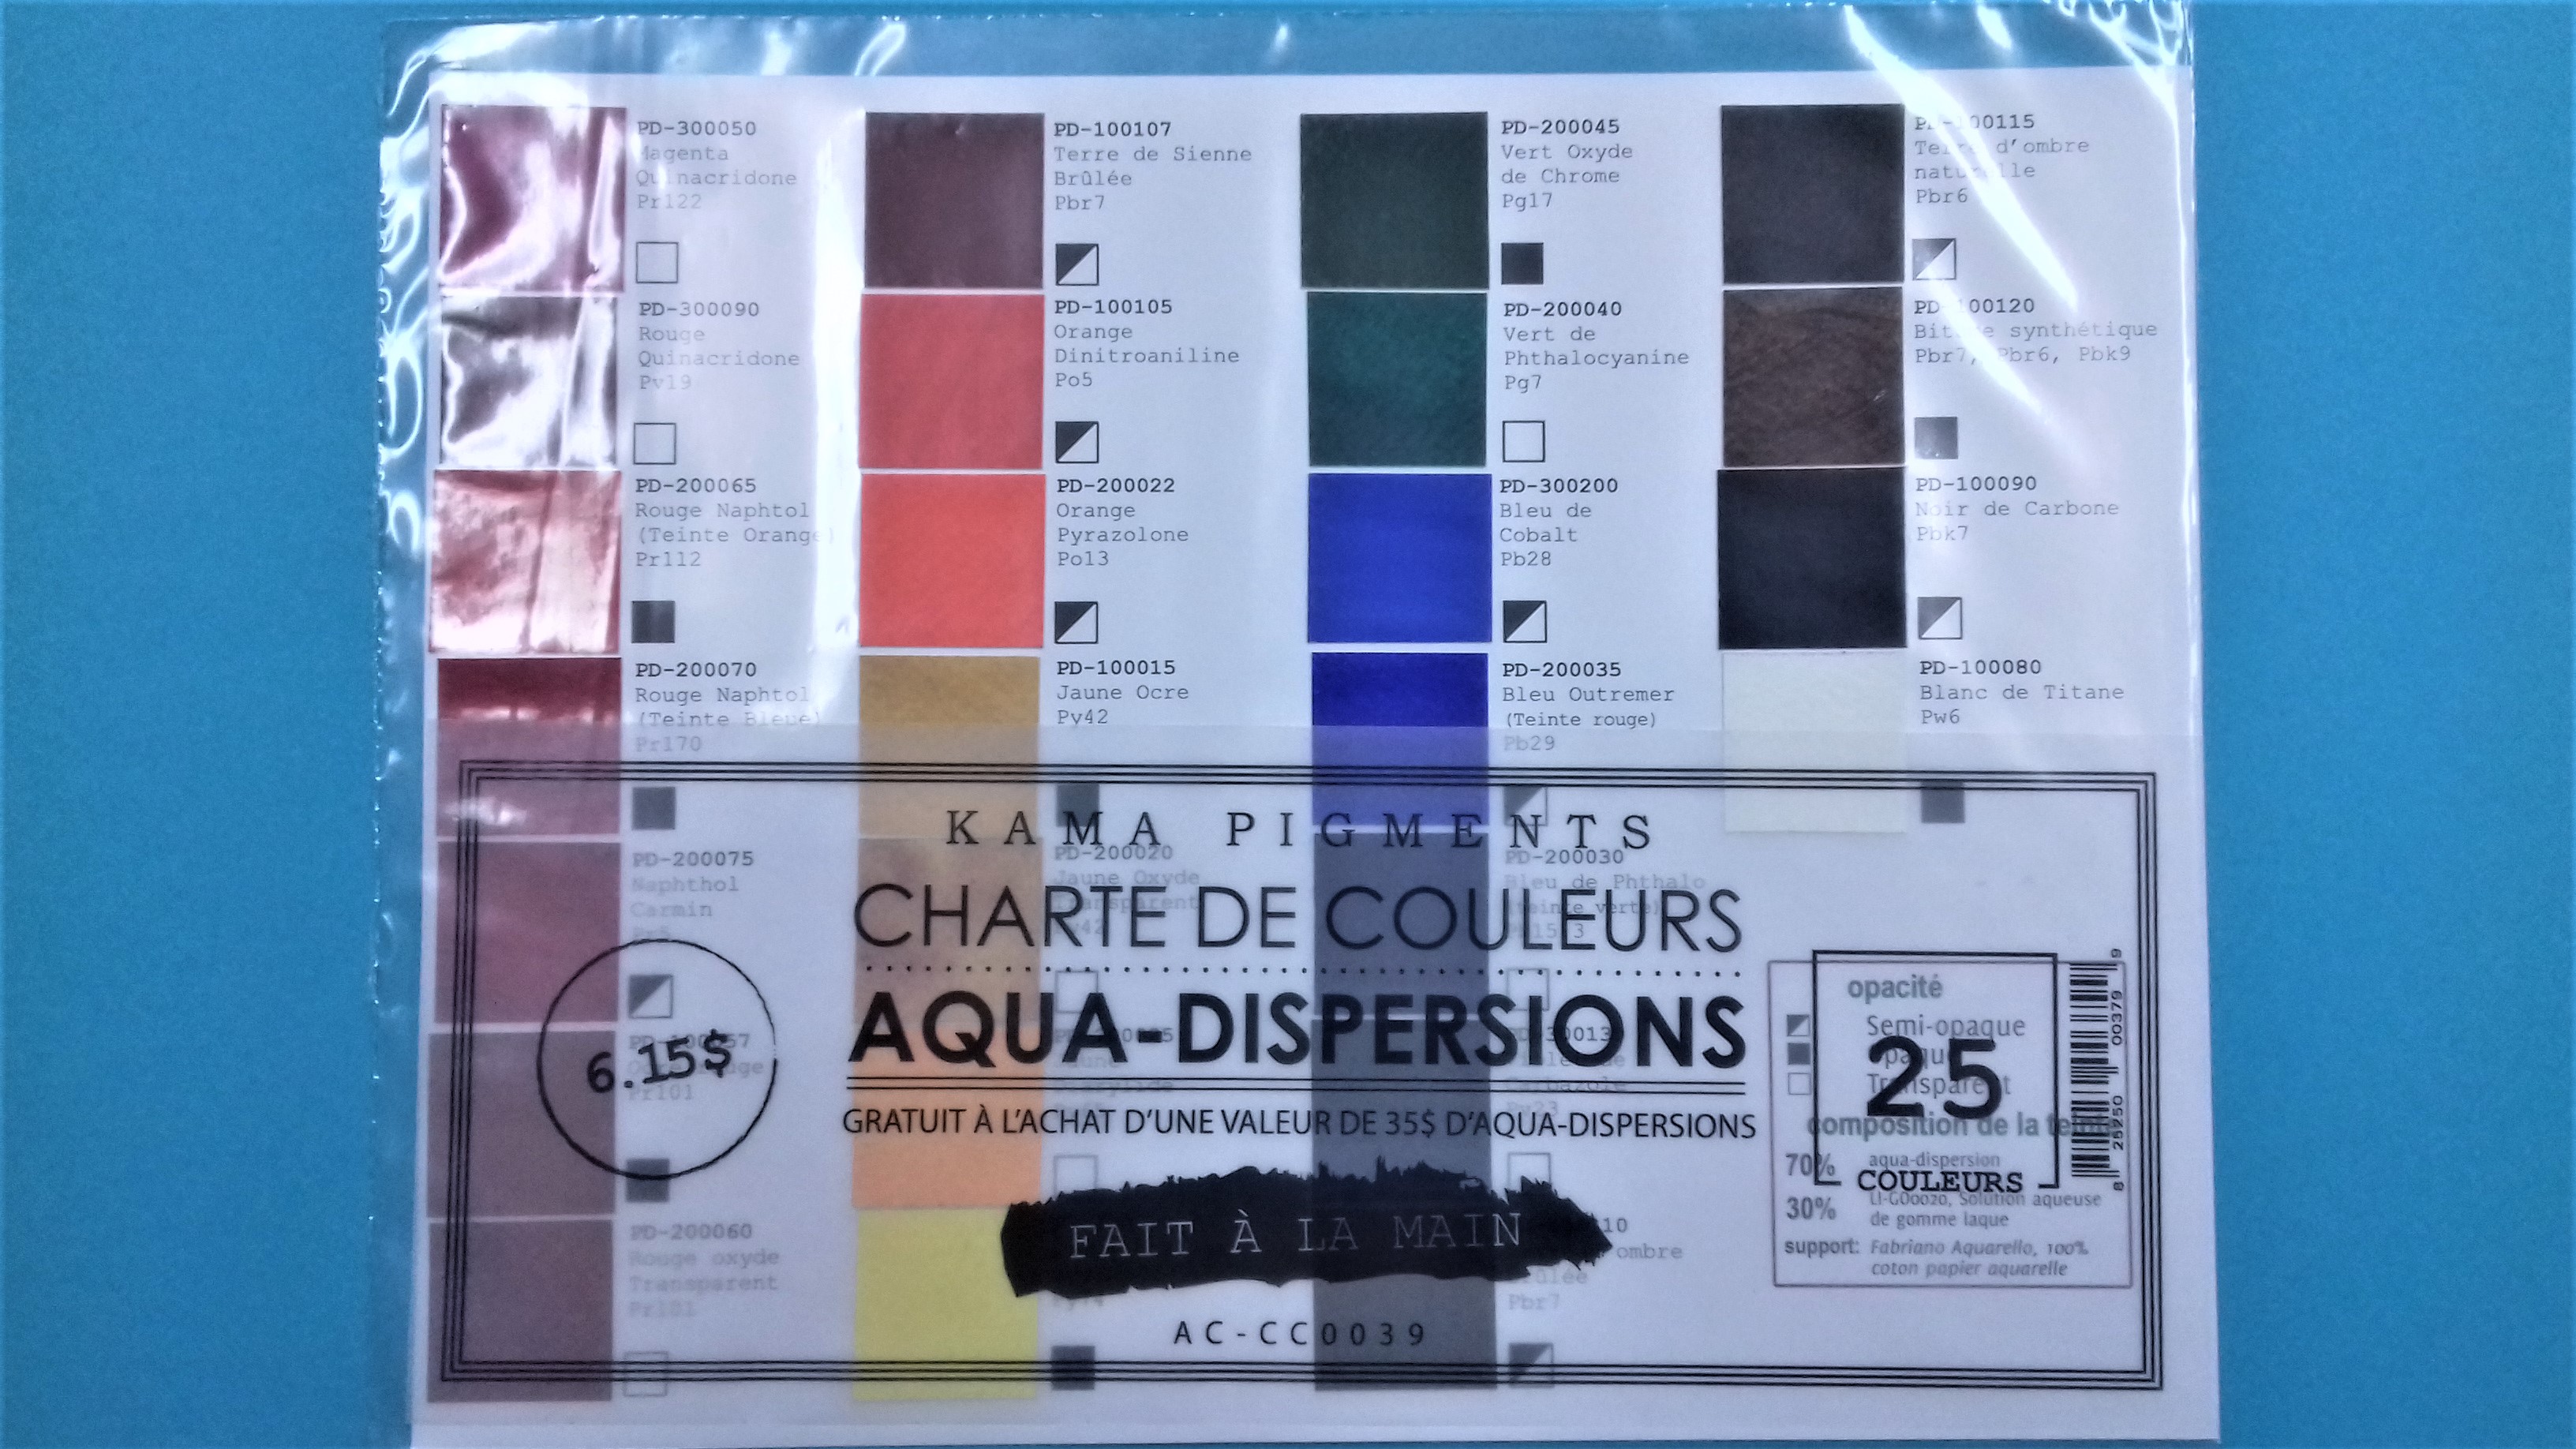 Kama Pigments Aqua-Dispersions Color Chart